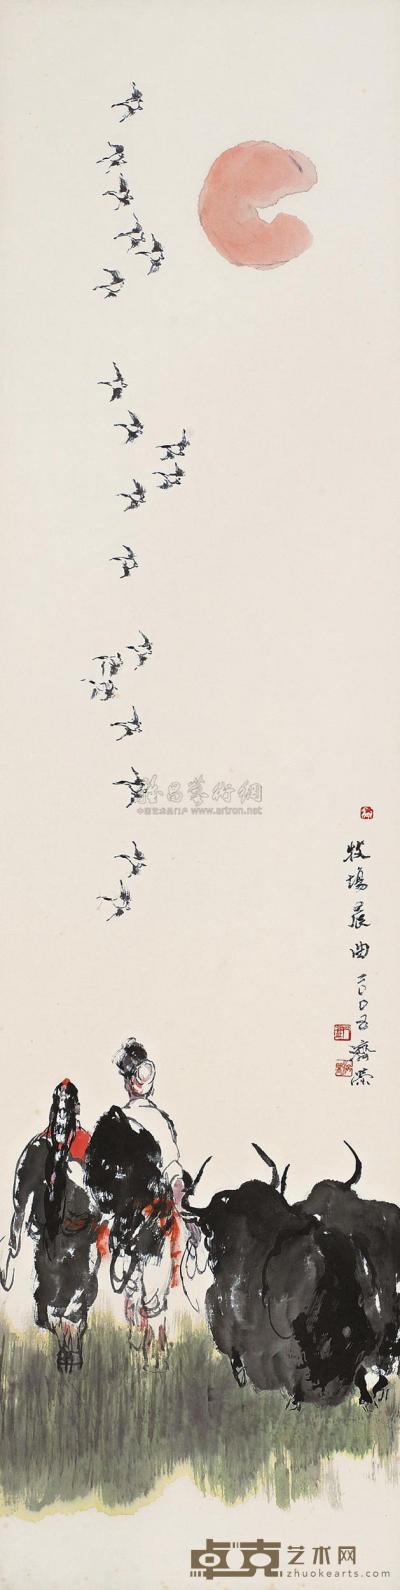 刘济荣 牧场晨曲 镜片 138×35cm